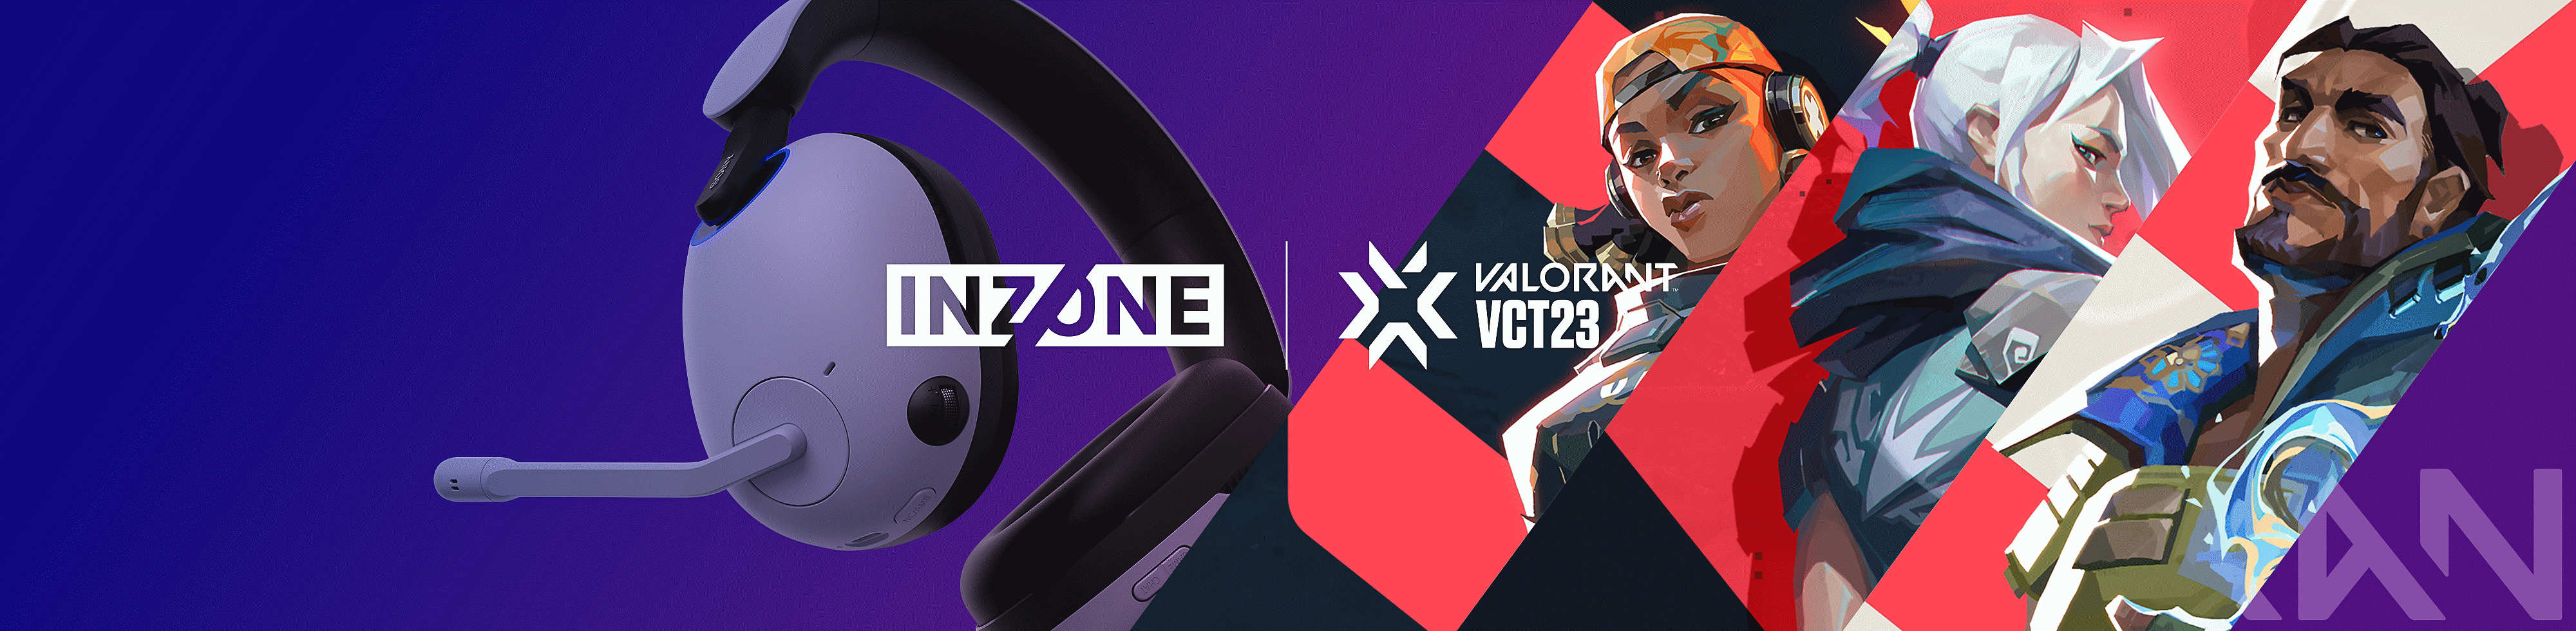 Snímek herní náhlavní soupravy INZONE H9 od společnosti Sony s postavami ze hry VALORANT a logem značky INZONE a VALORANT šampionátu VCT23